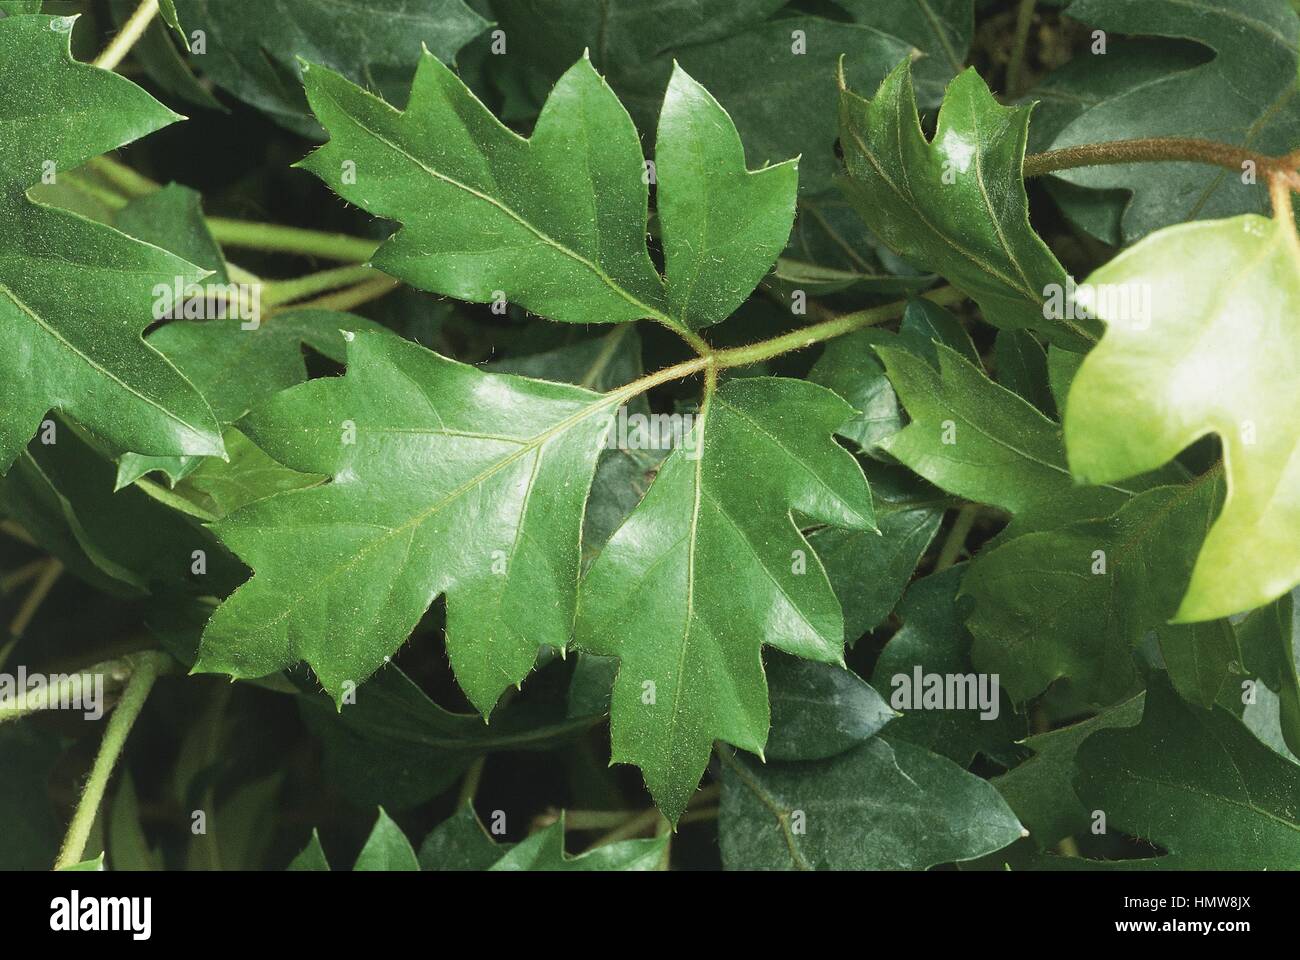 Cissus (Cissus rhombifolia), close-up of leaves Stock Photo